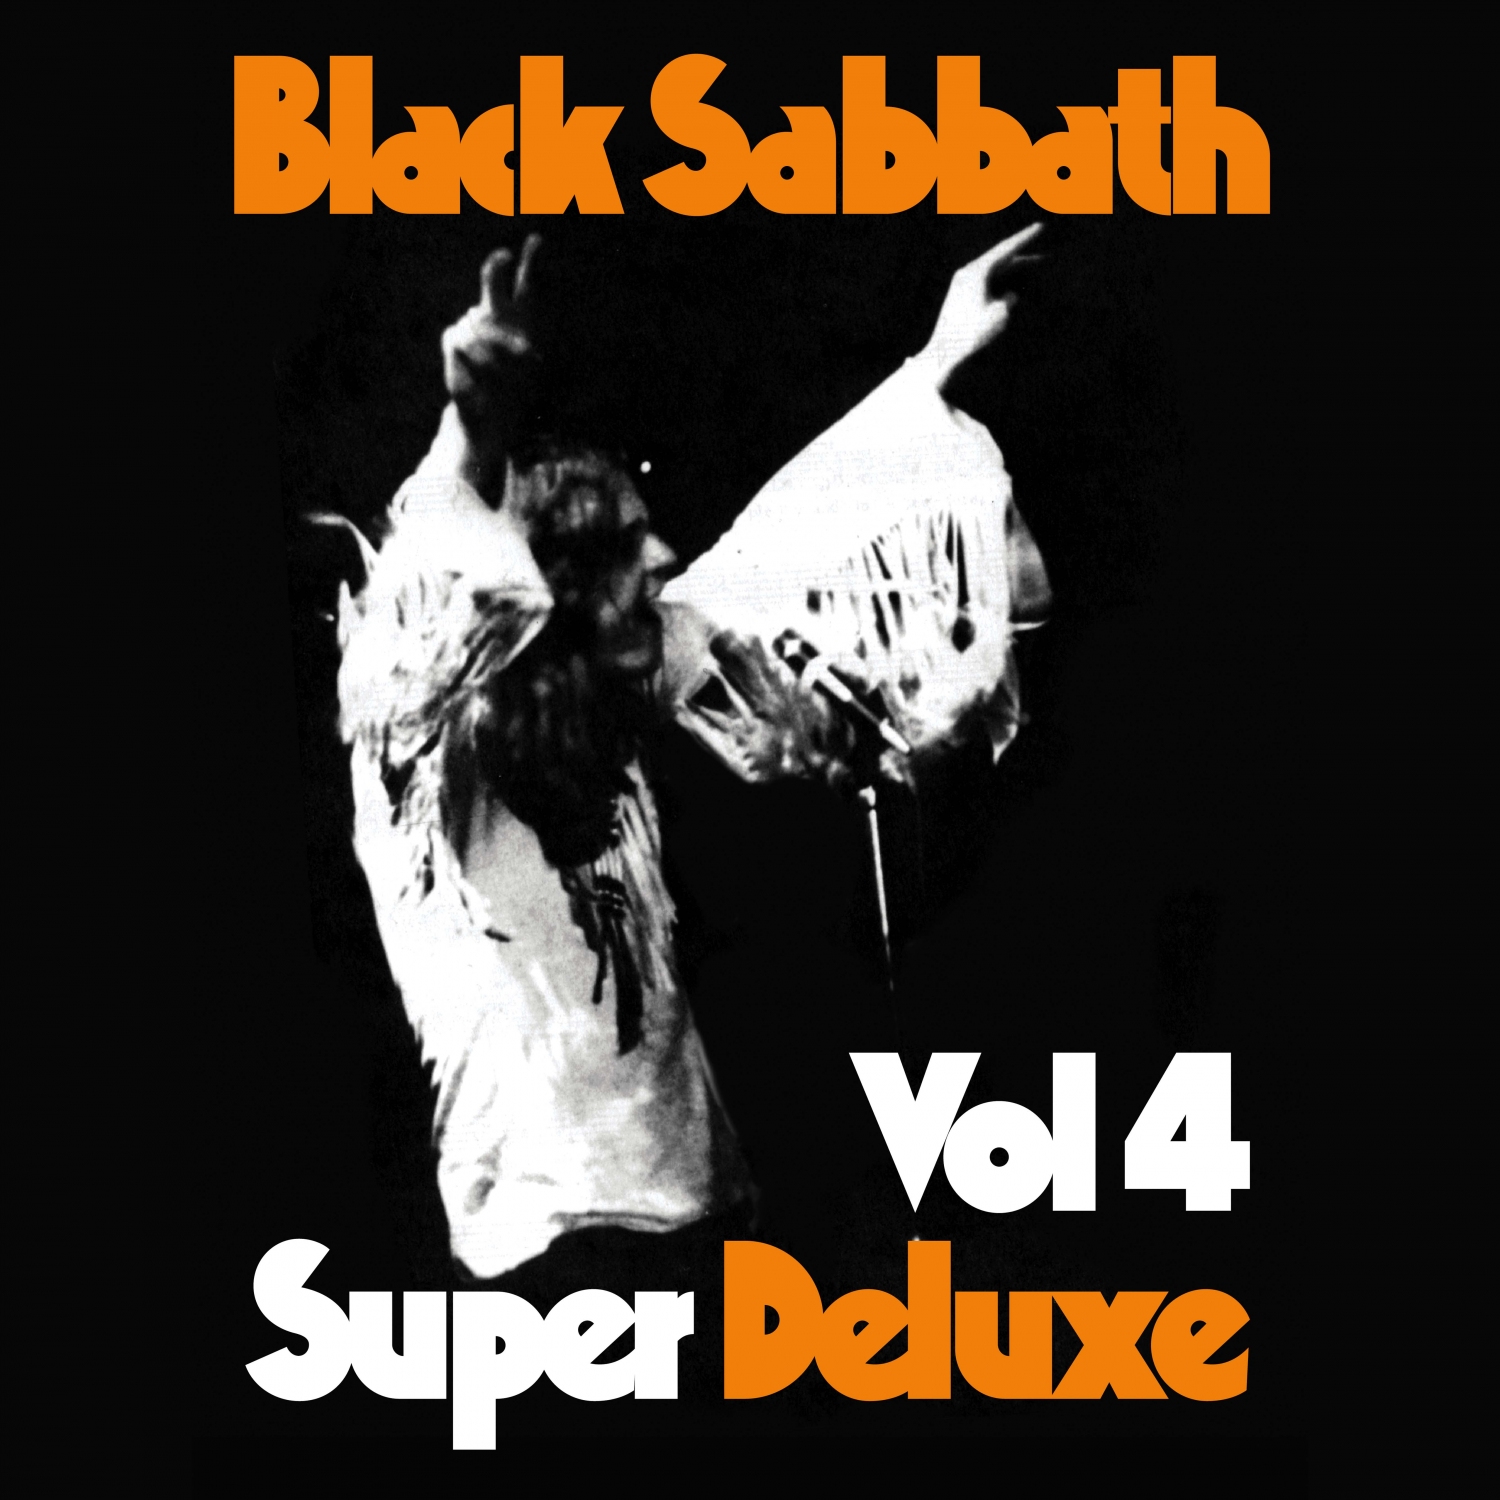 Black sabbath vol 4. Black Sabbath Vol 4 super Deluxe. Black Sabbath Vol 4 1972. Black Sabbath Vol. 4 винил. Black Sabbath Vol 4 футболка.